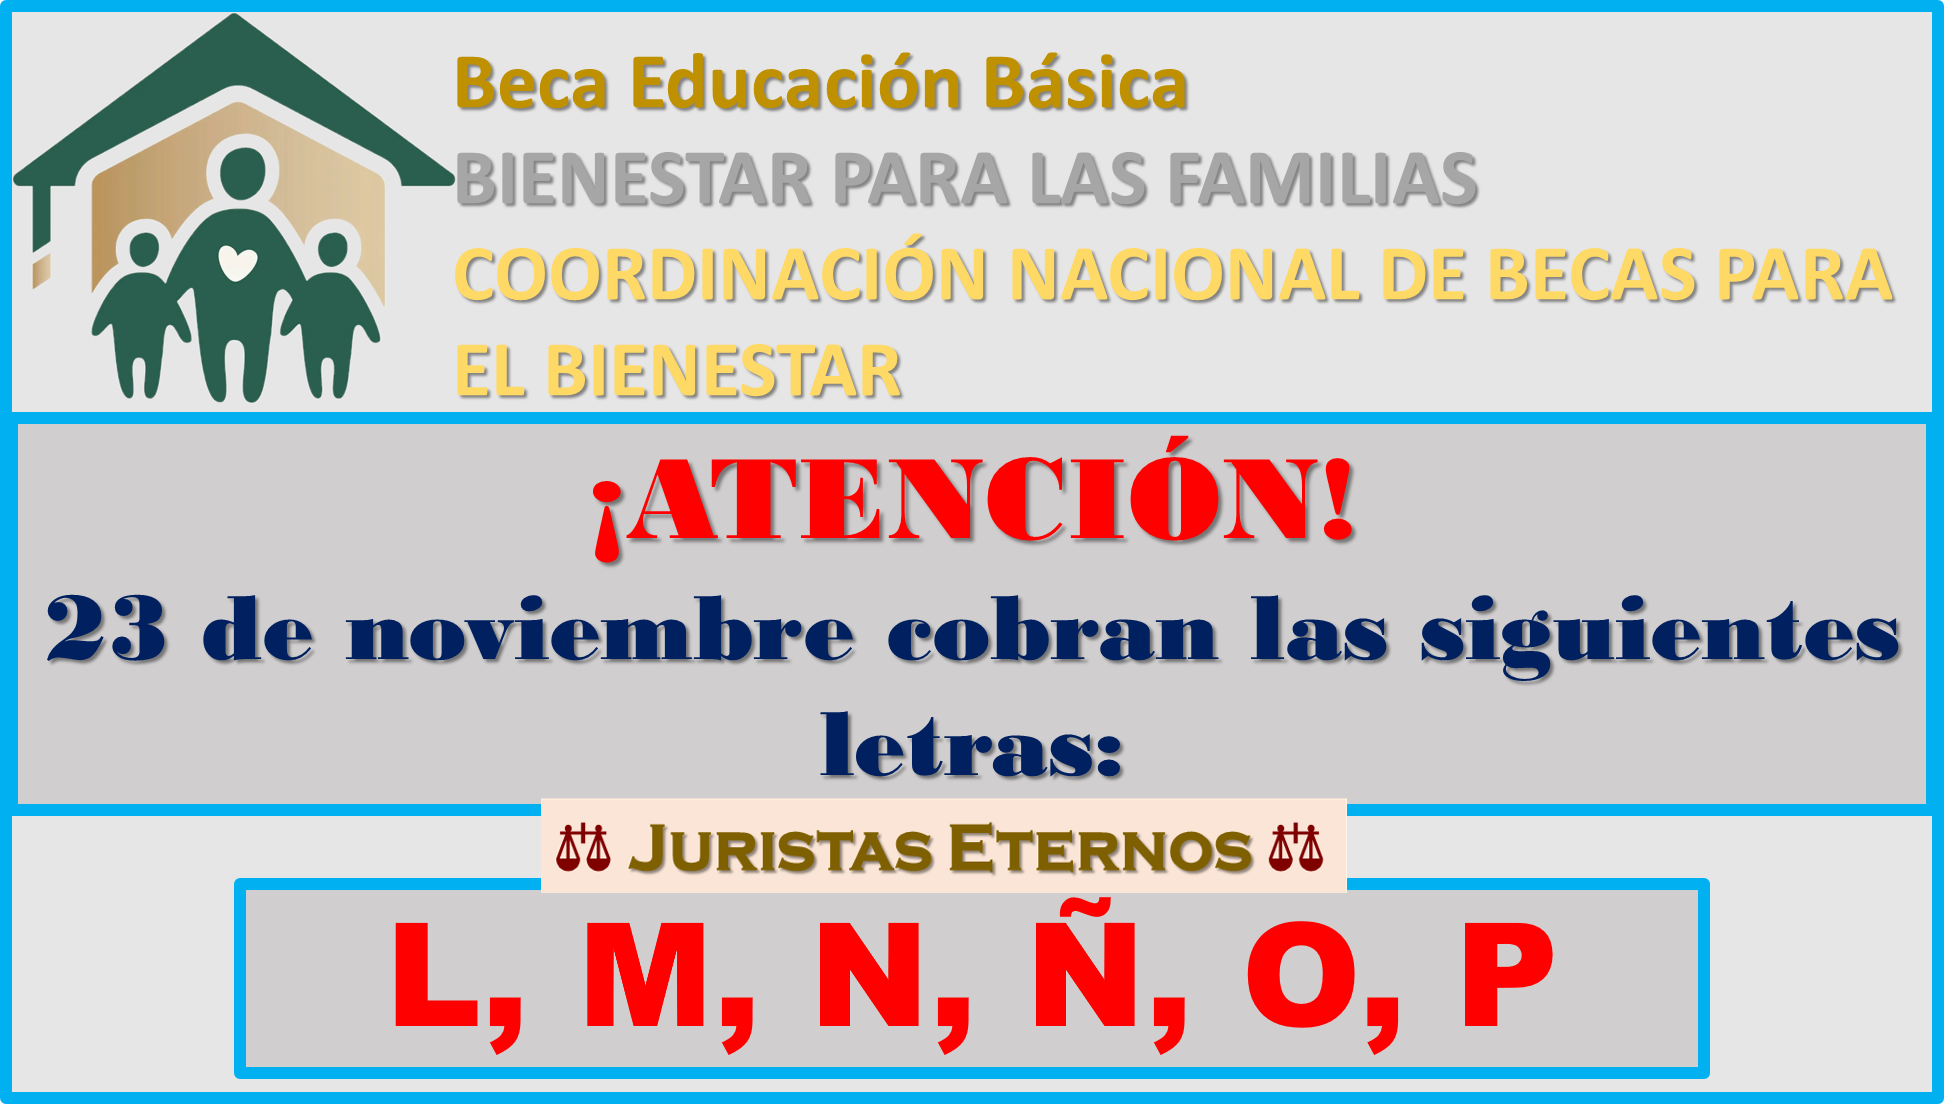 Atención los apellidos que inicien con las letras L a la letra P, cobraran el día 23 de noviembre del año 2022 la beca Benito Juárez